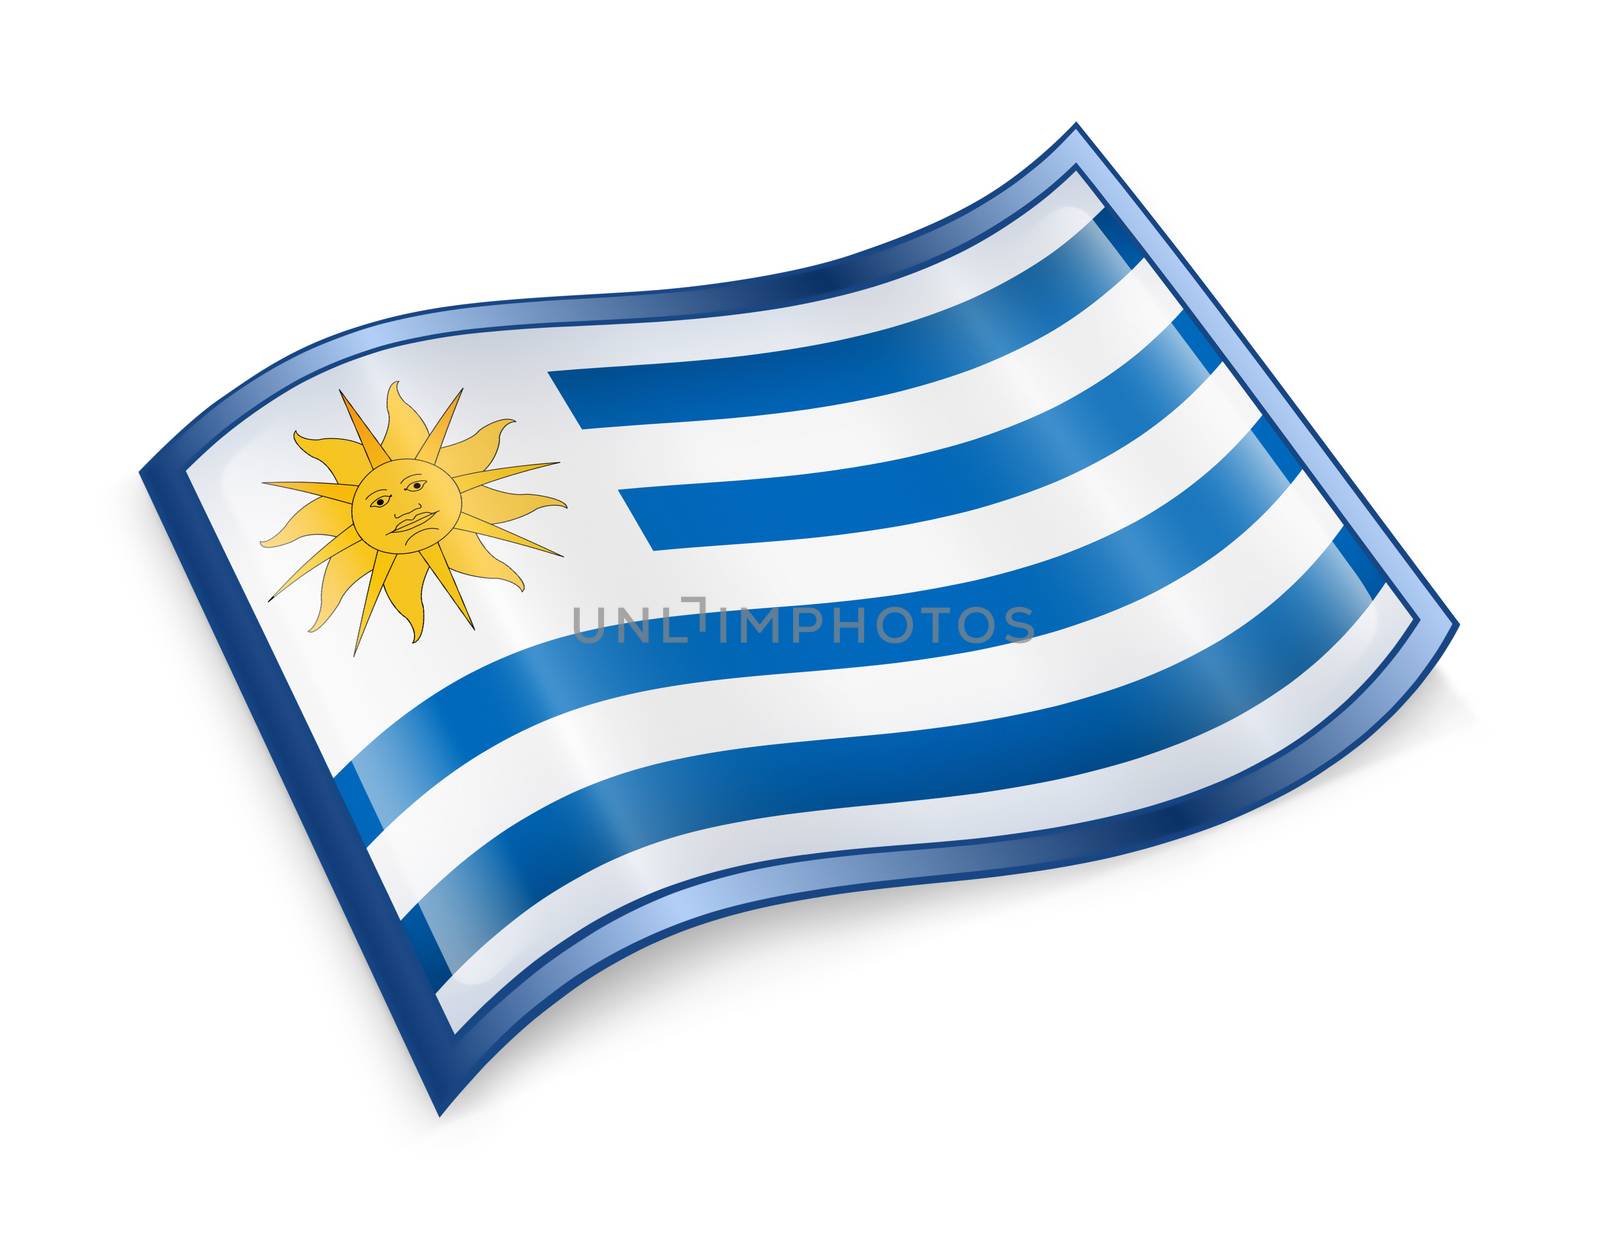 Uruguaian Flag icon, isolated on white background